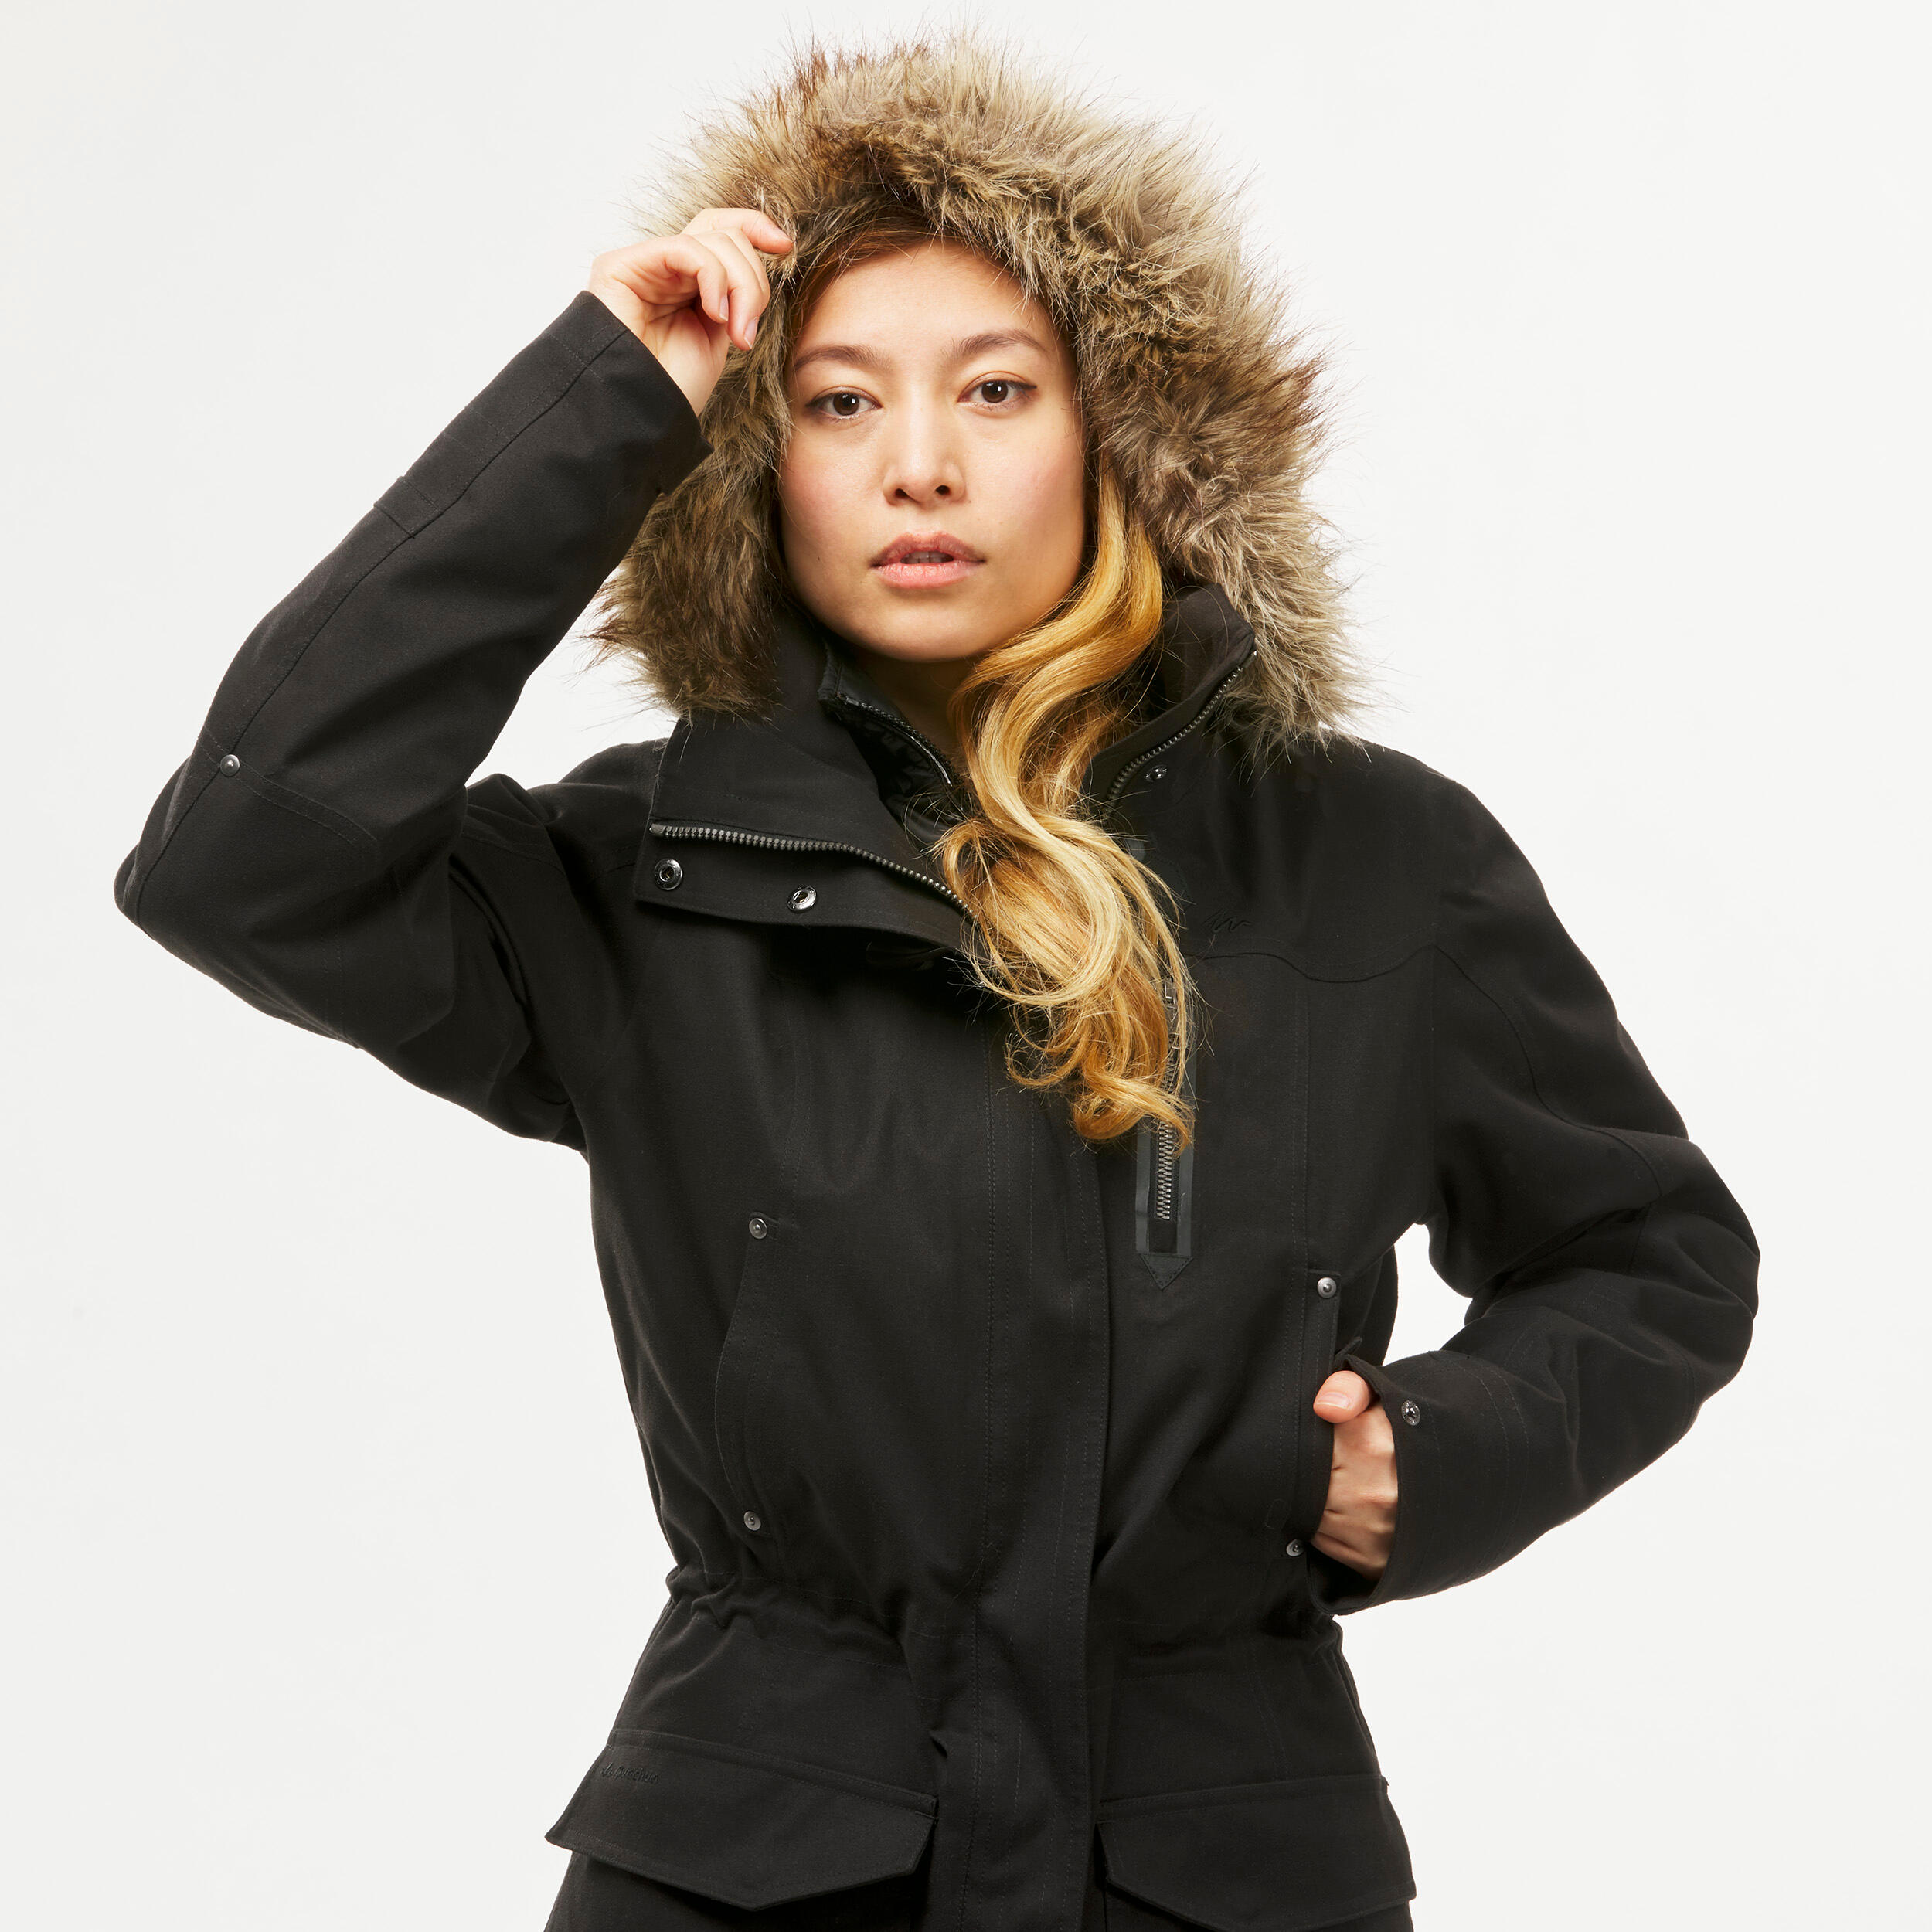 Manteau 3 en 1 femme – Travel 700 noir - FORCLAZ